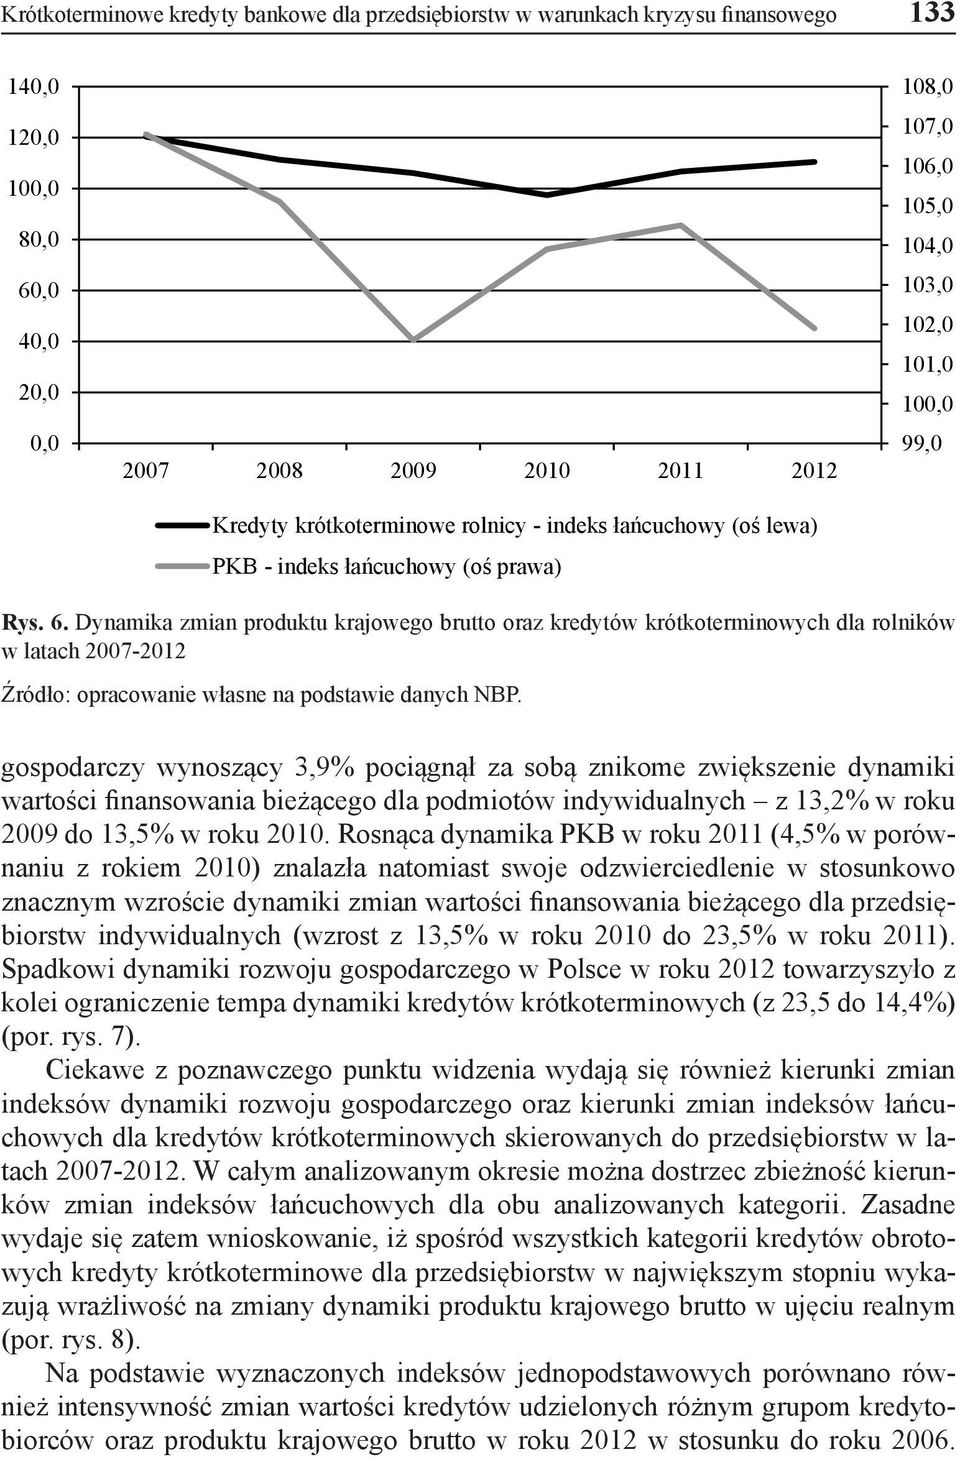 Dynamika zmian produktu krajowego brutto oraz kredytów krótkoterminowych dla rolników w latach 2007-2012 Źródło: opracowanie własne na podstawie danych NBP.